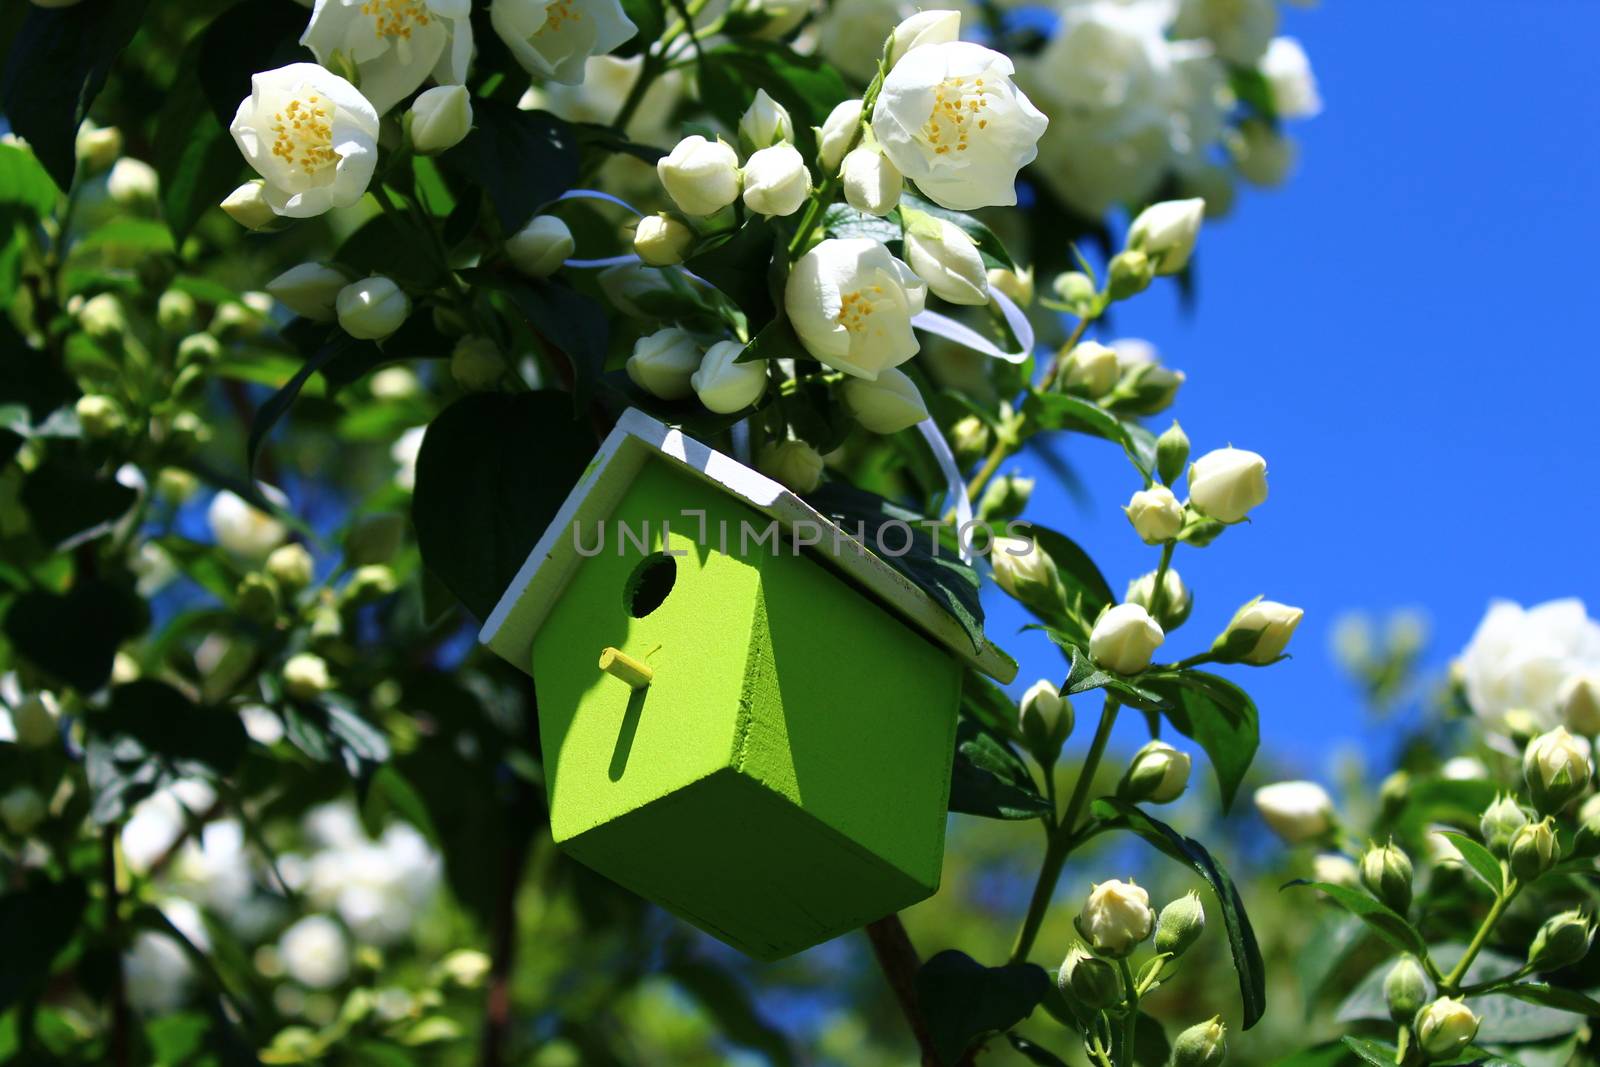 birdhouse in the jasmine in the garden by martina_unbehauen